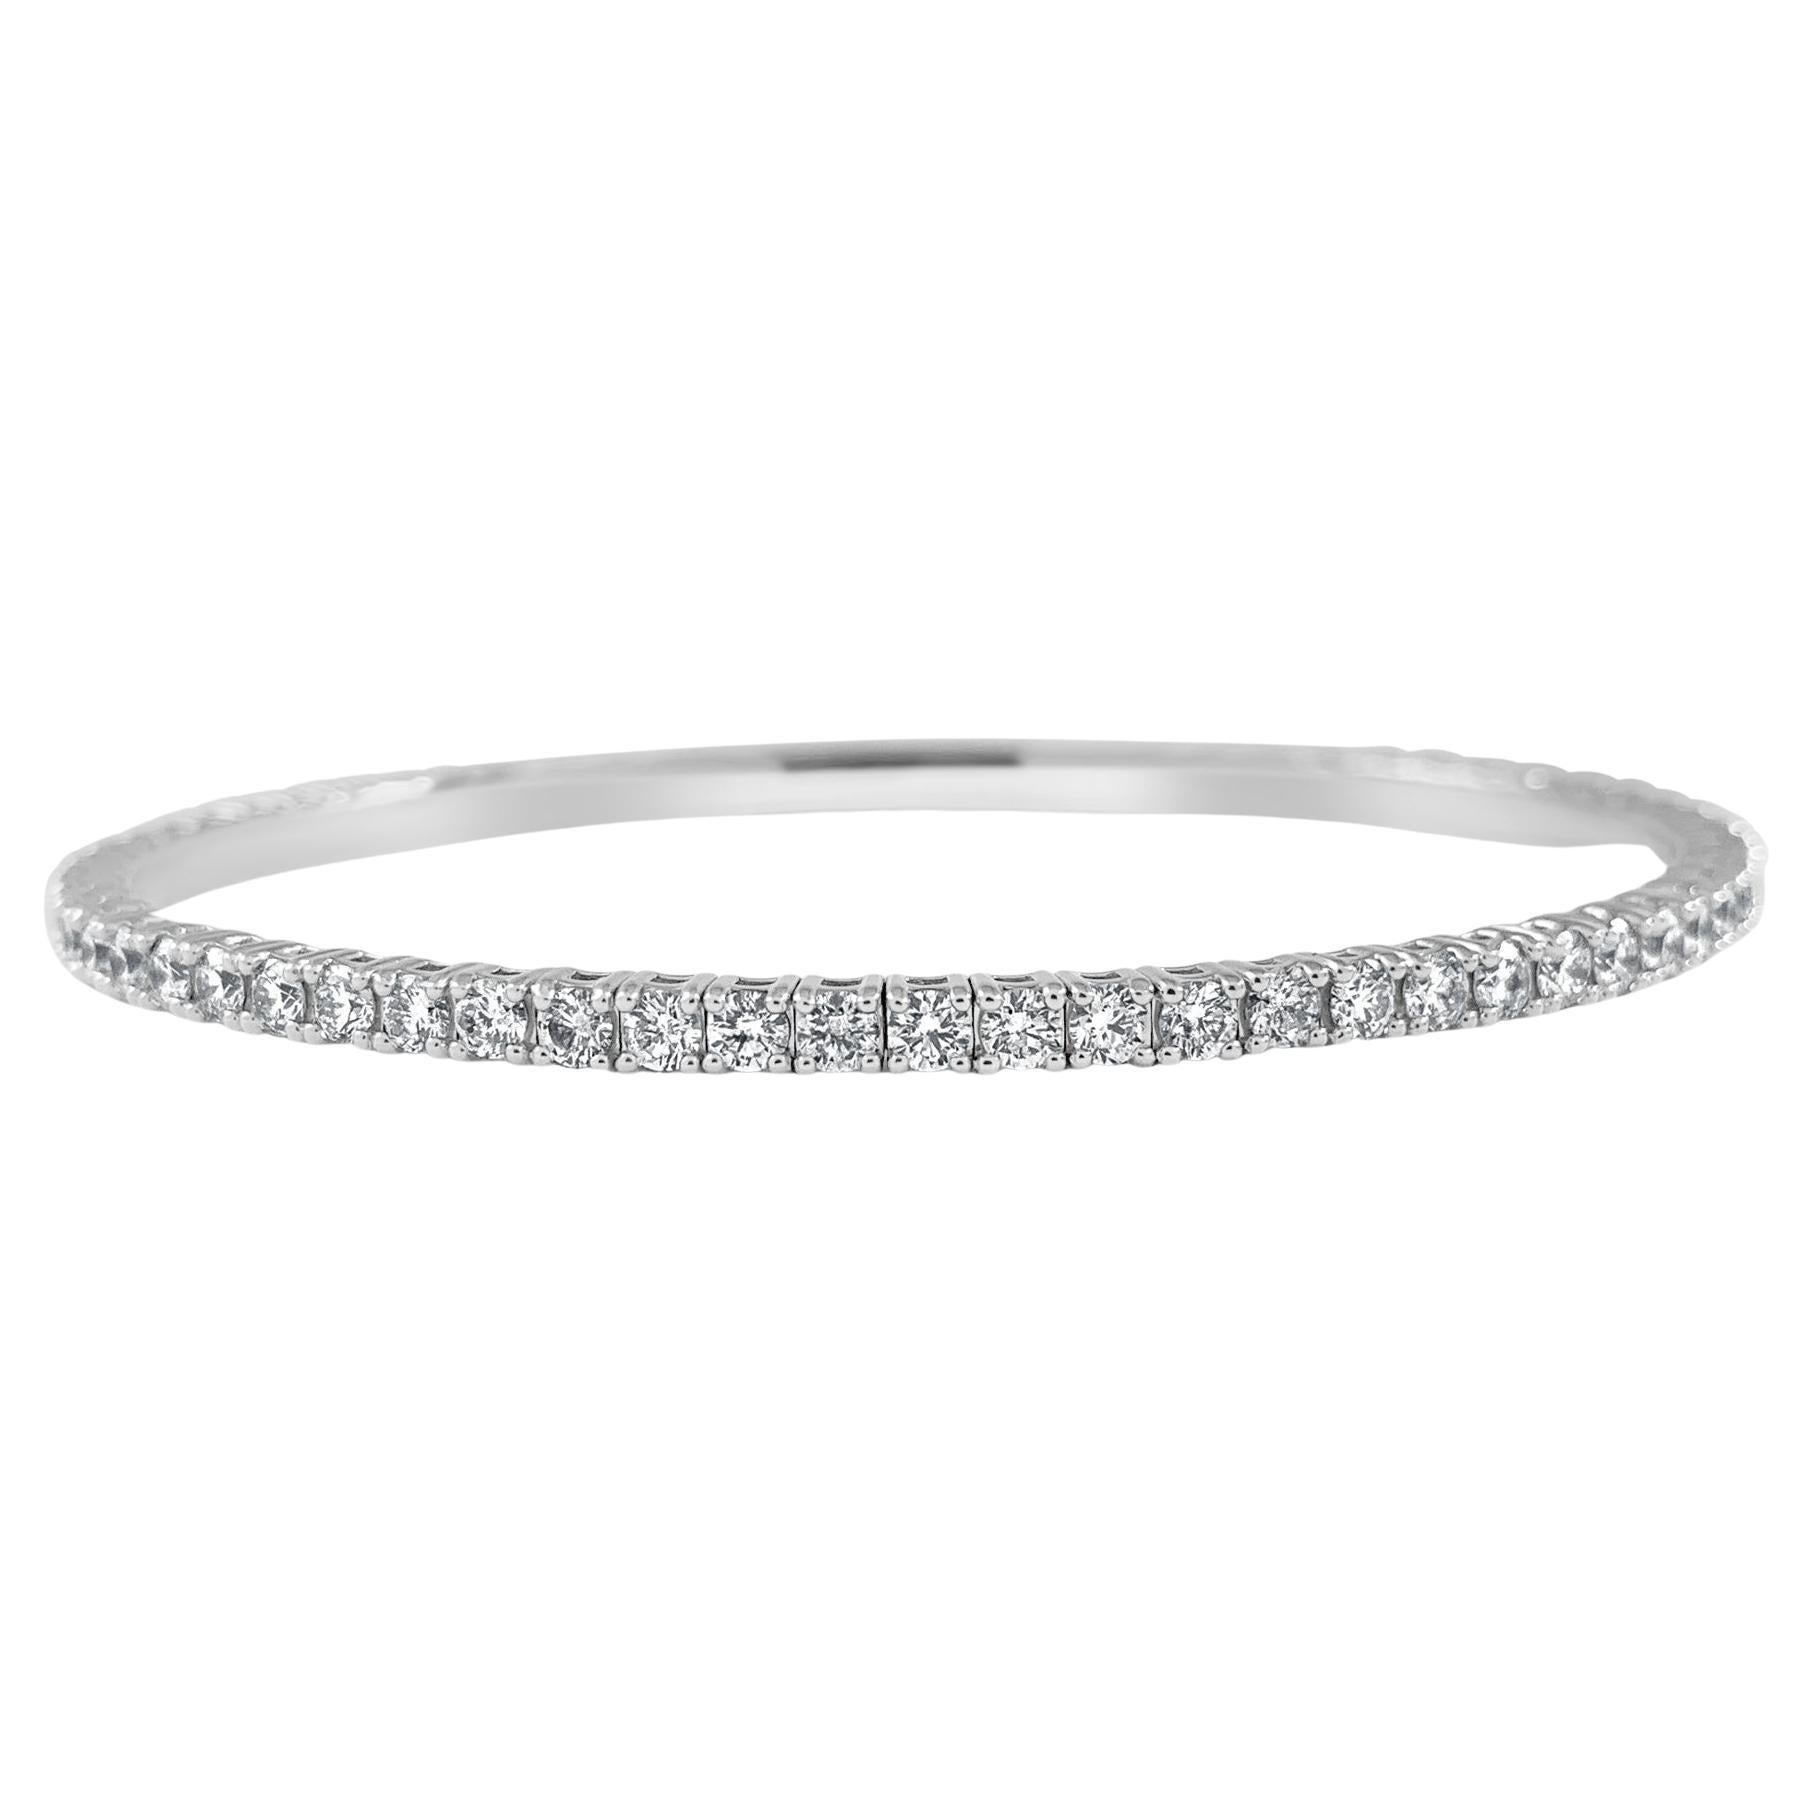 14K White Gold Diamond 3ct Flexible Bracelet for Her